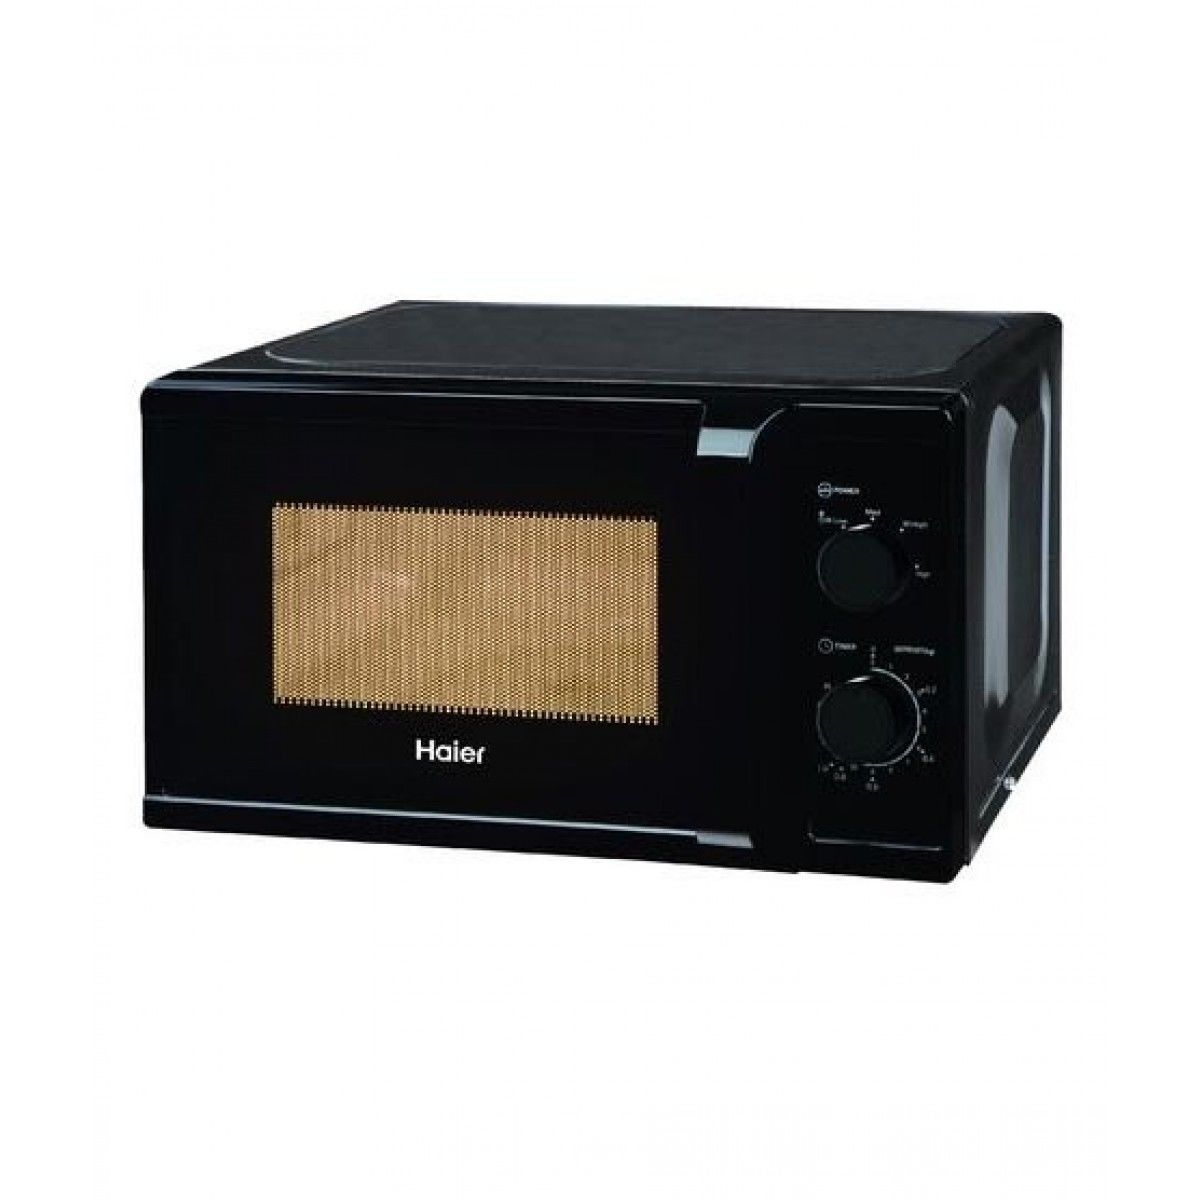 haier microwave oven 20 hmn-mm620